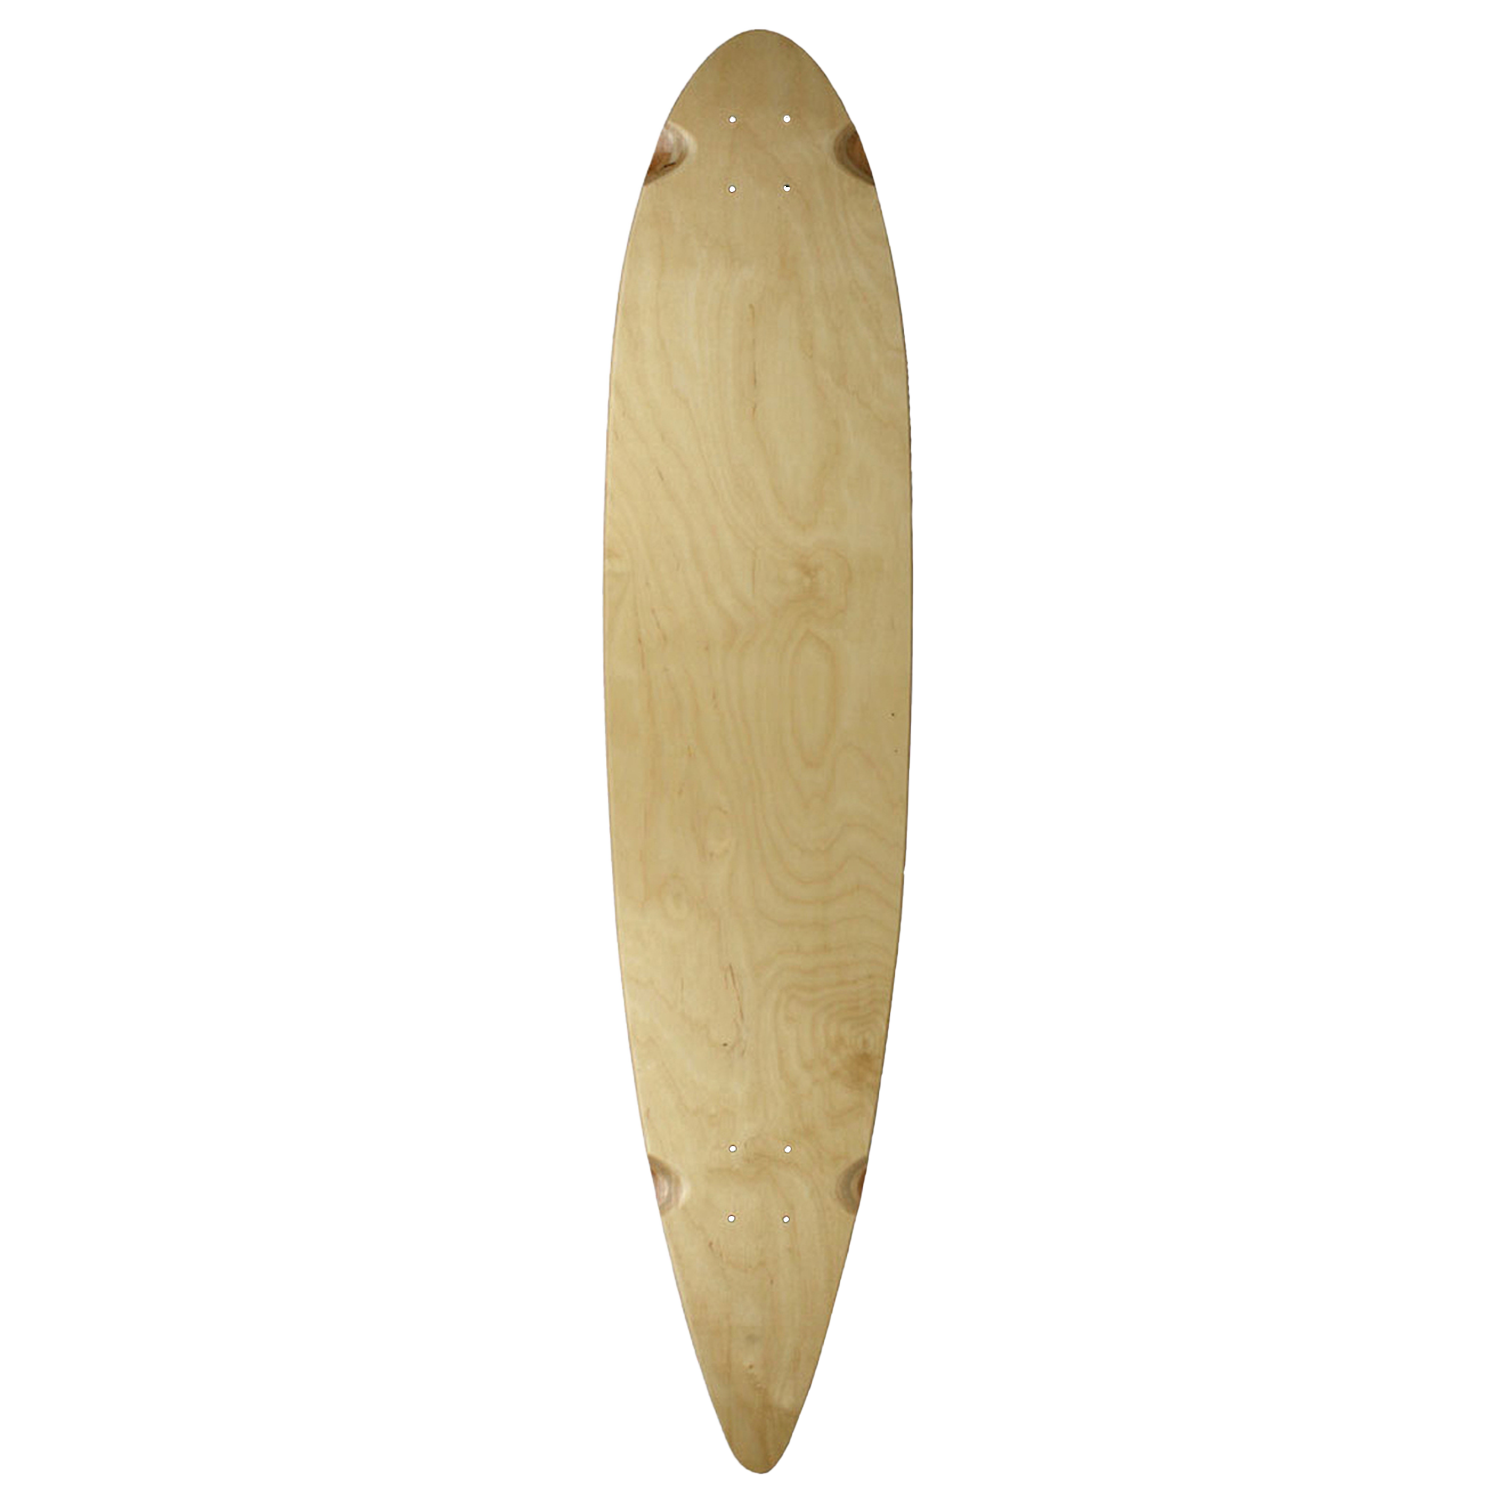 Longboard from Skateboards Longboards